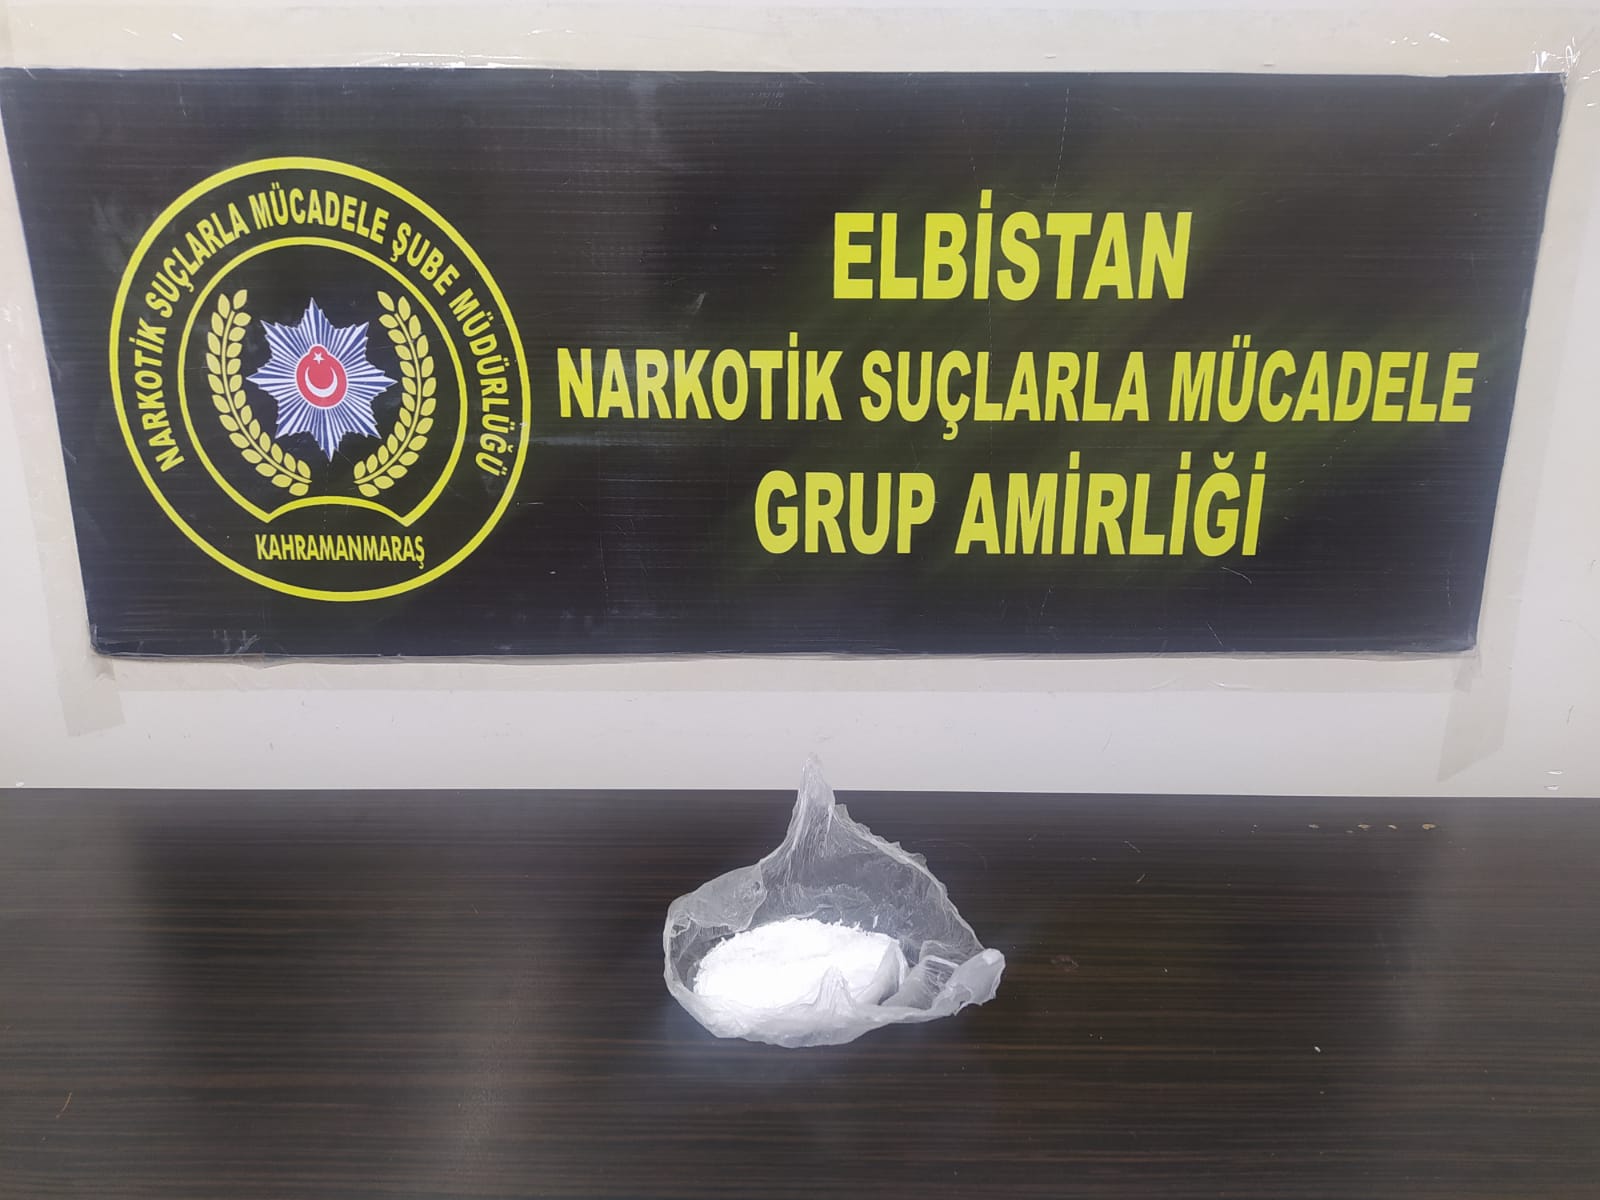 Elbistan’da uyuşturucudan 2 kişi tutuklandı